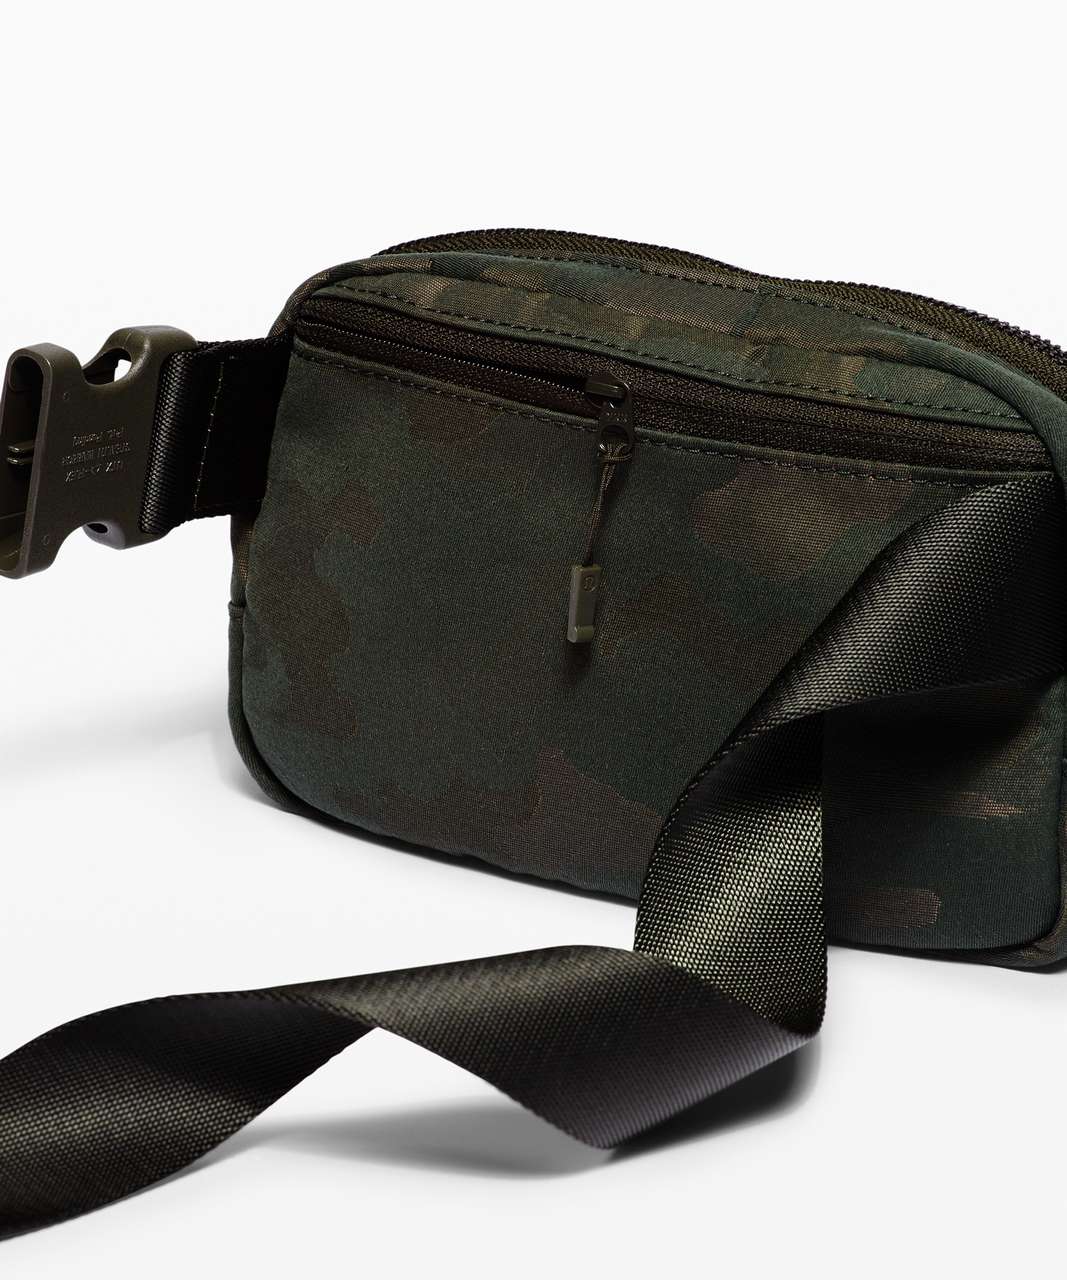 Lululemon Everywhere Belt Bag *1L - Heritage Camo Jacquard Max Dark Olive Sargent Green